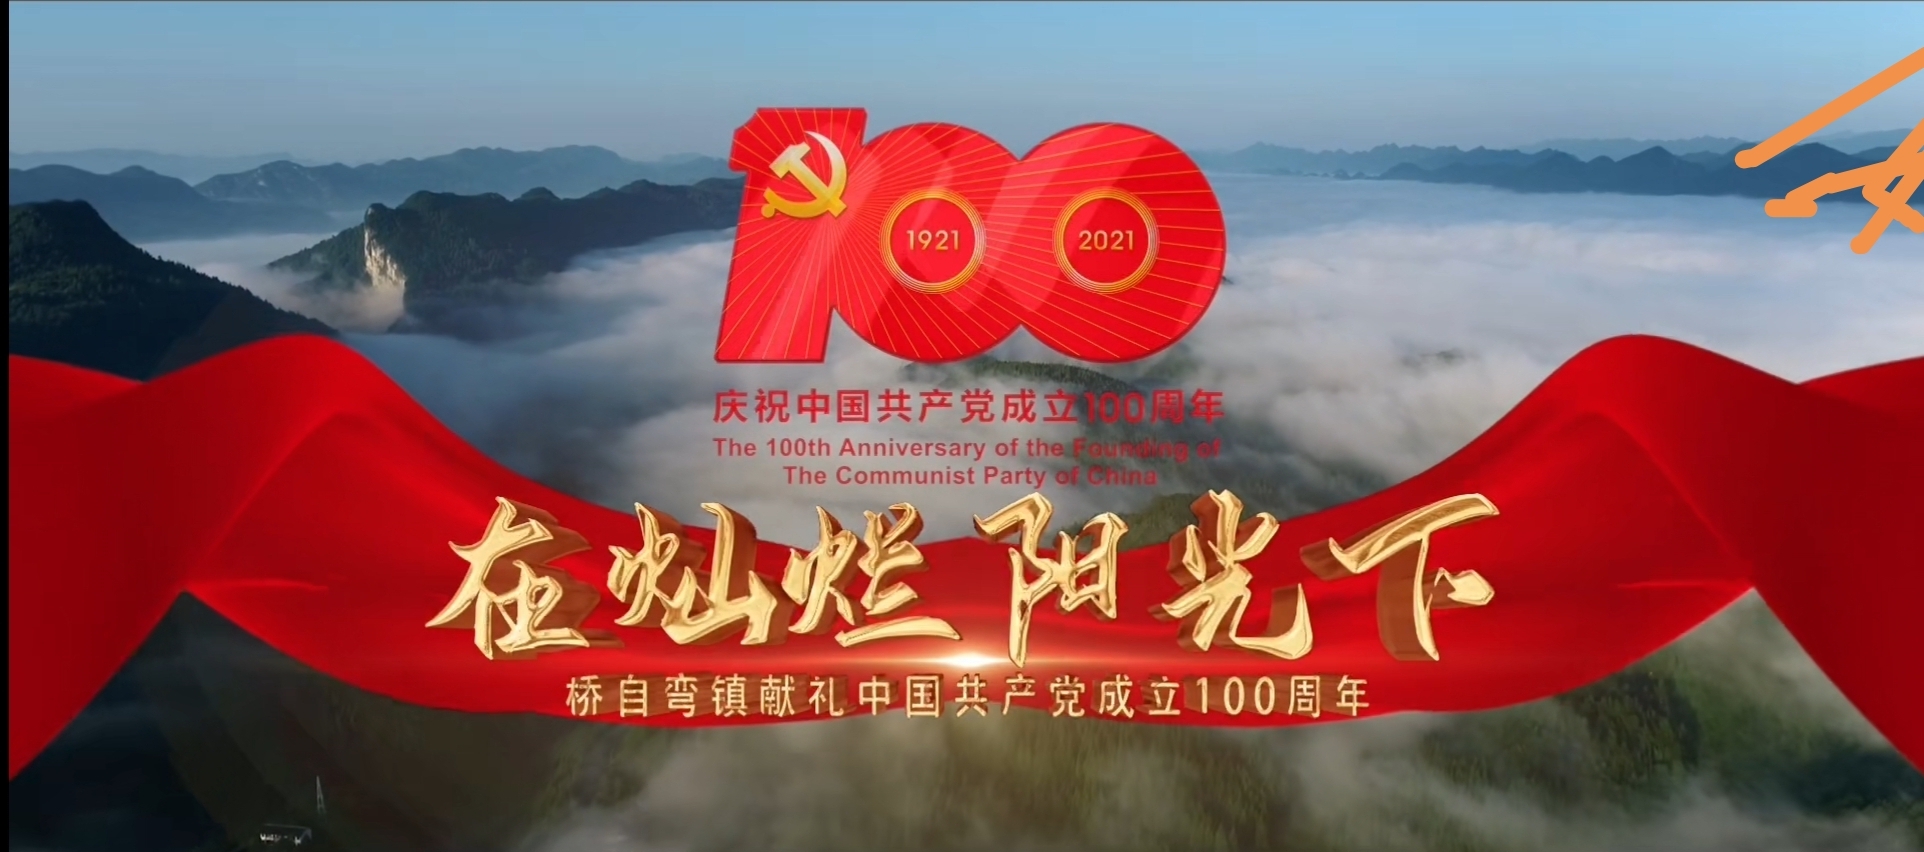 桥自弯镇庆祝中国共产党成立100周年献礼片上映！将军故里携您一同为党贺岁百年！